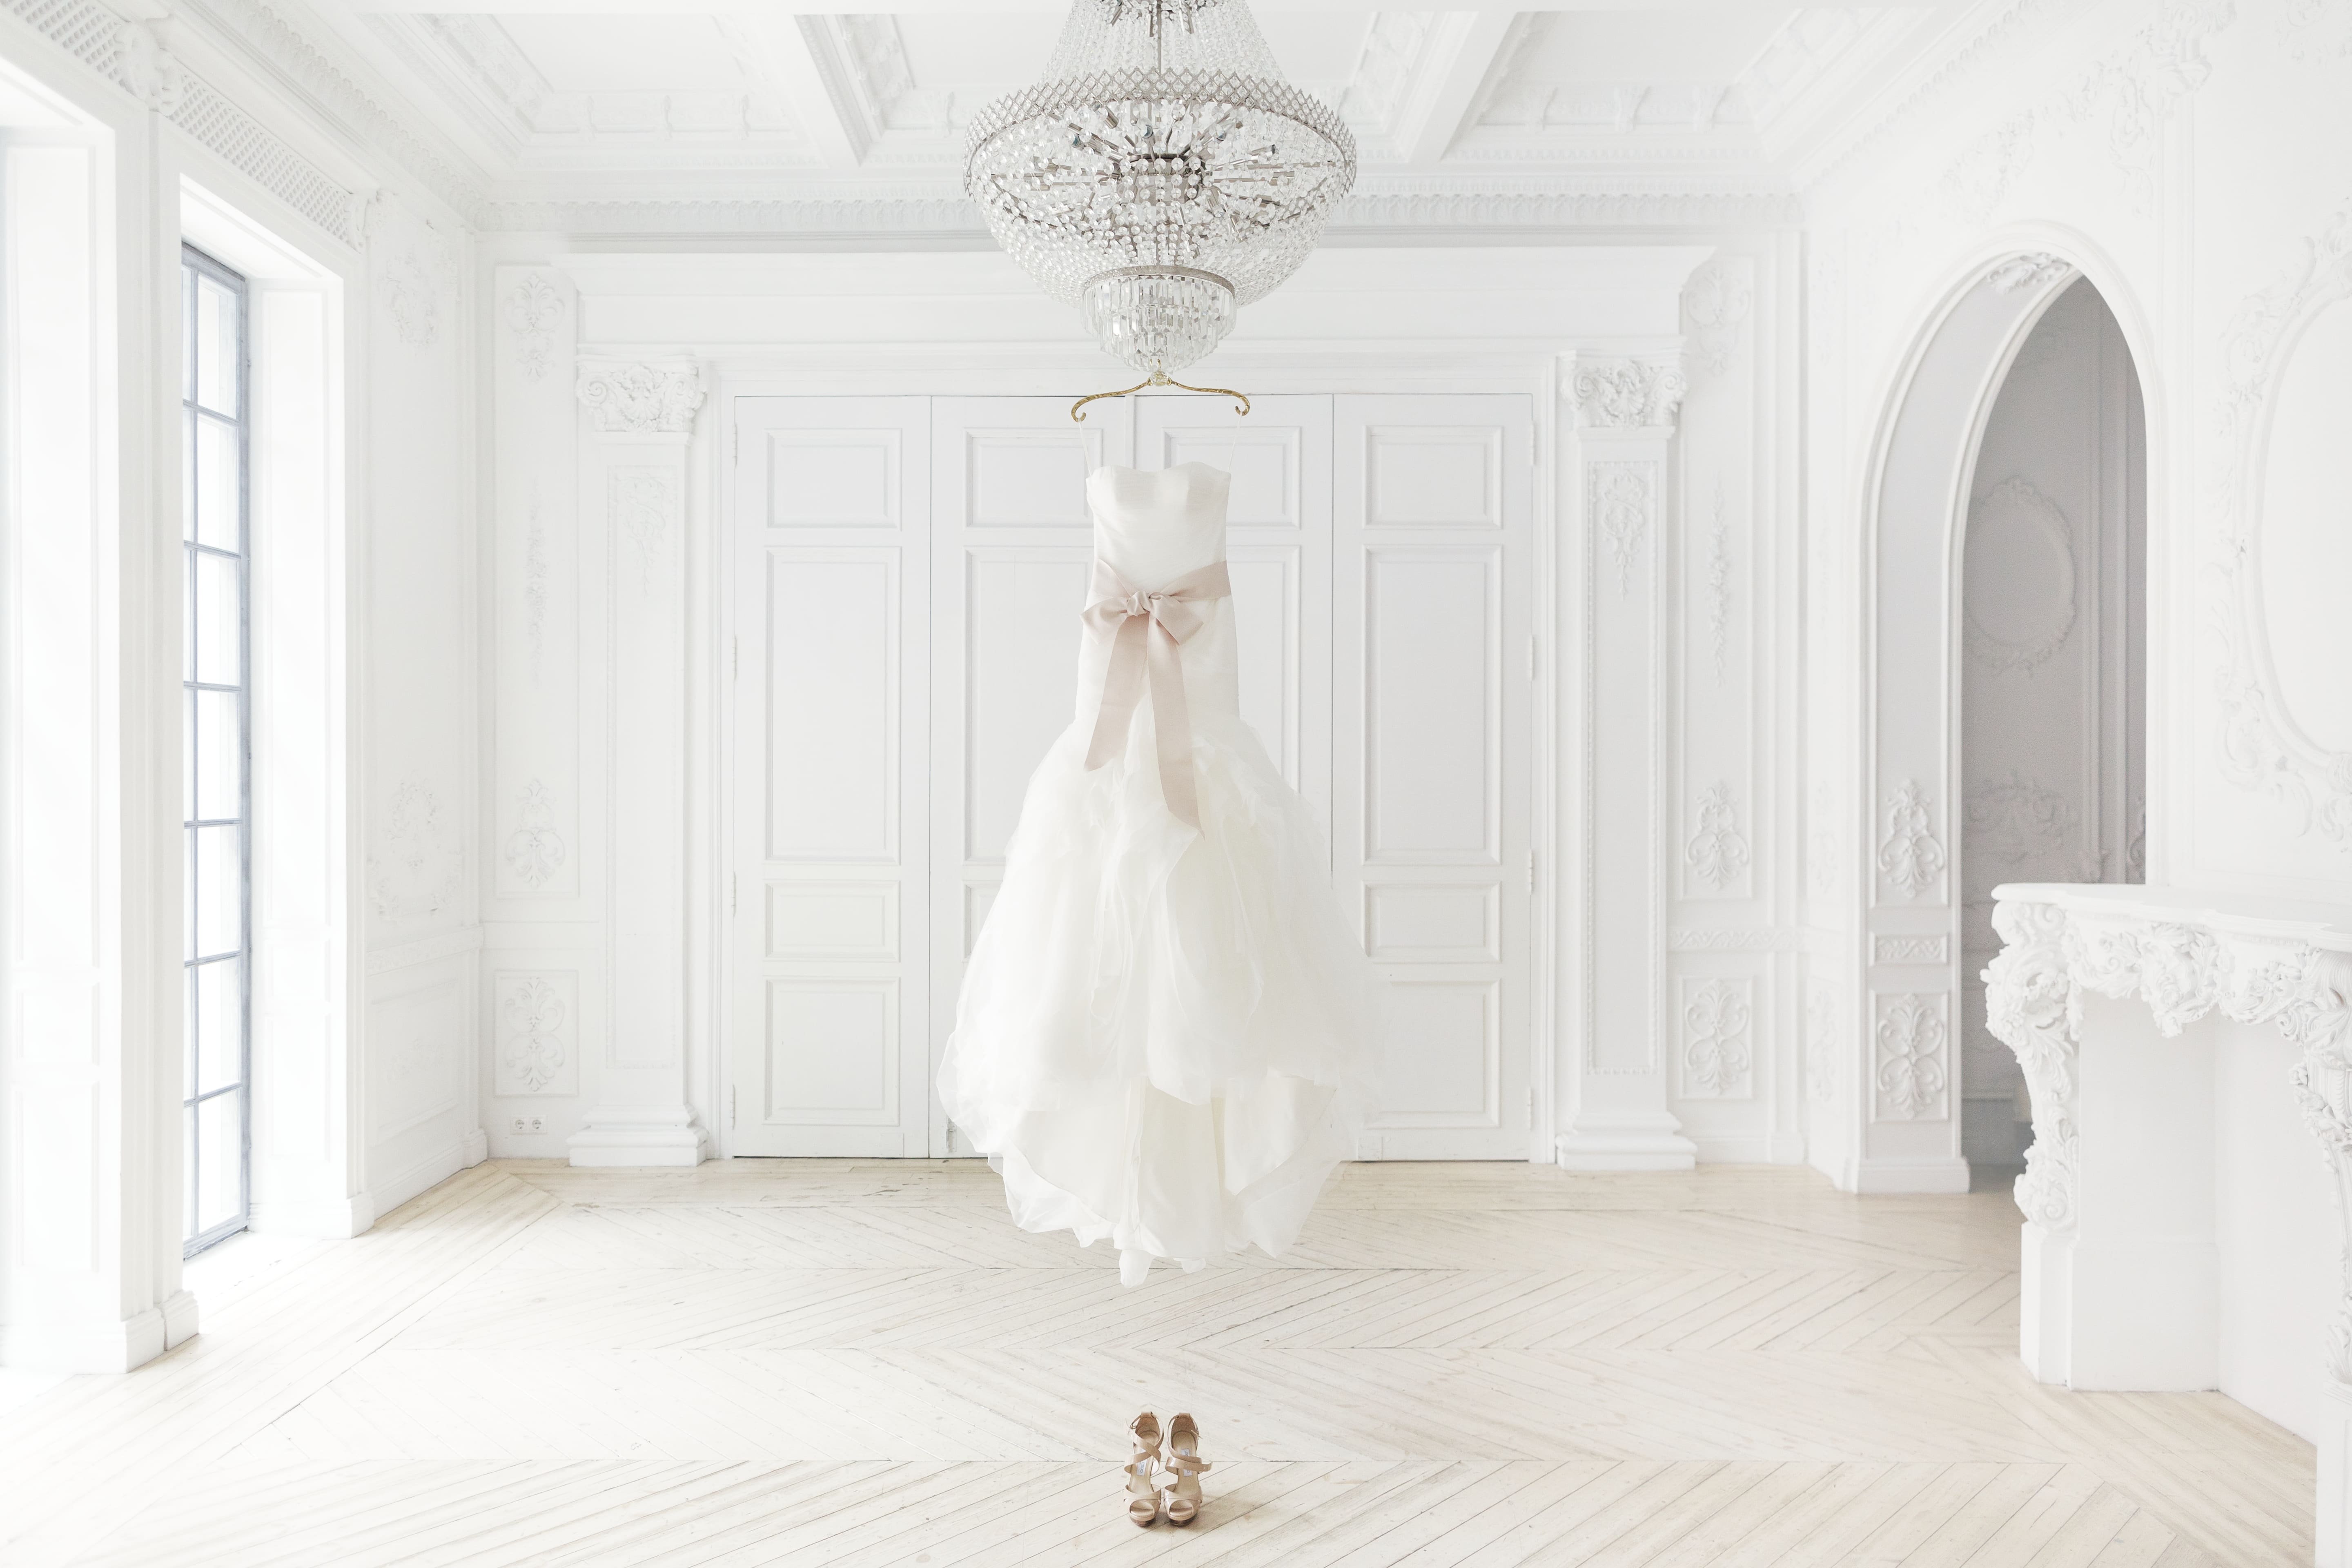 Imagem de um vestido de noiva pendurado no meio de um espaço de um ateliê depois que um empreendedor resolveu abrir uma loja de confecção de vestidos de noiva